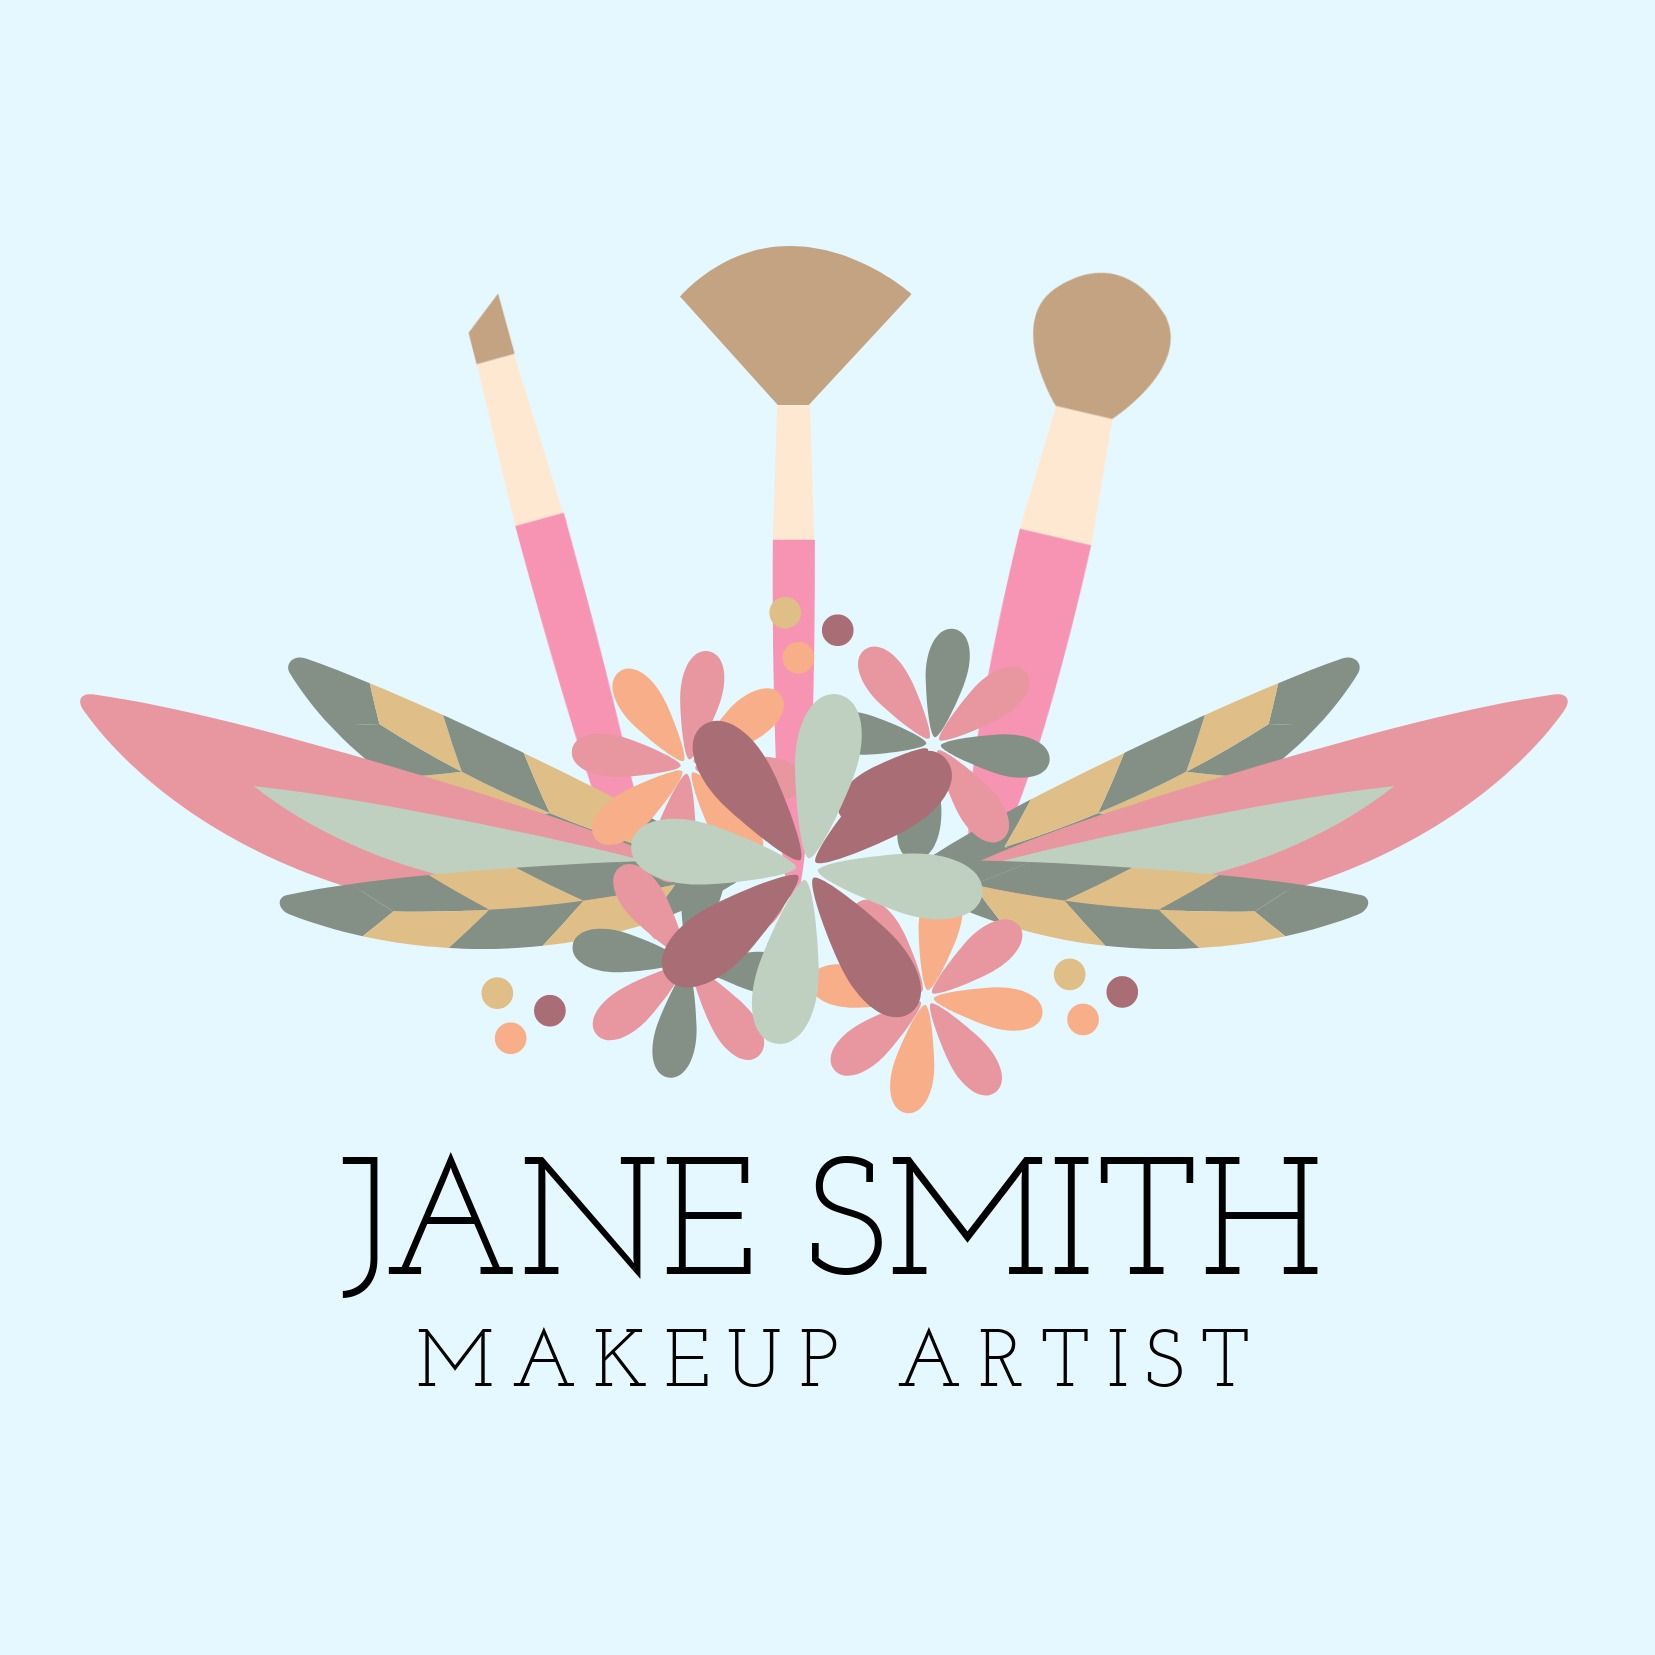 Pastellfarbenes Jane Smith Make-up-Artist-Logo und Begleittext mit Slab Serif